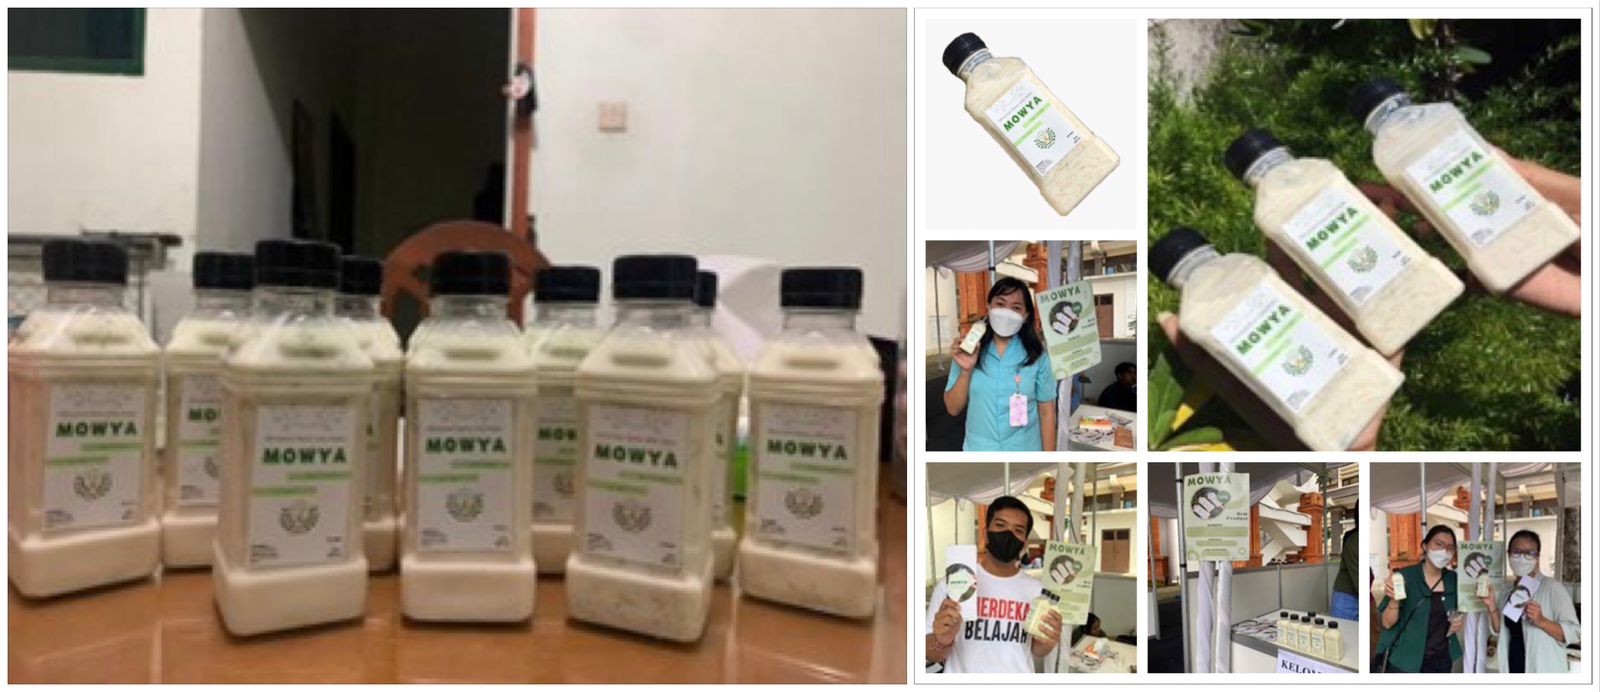 Kreatif, Mahasiswa Teknologi Pangan Kreasikan Minuman Susu Kedelai Dengan Jelly Berbahan Daun Kelor (Mowya) Sebagai Minuman Sehat Dengan Sejuta Manfaat